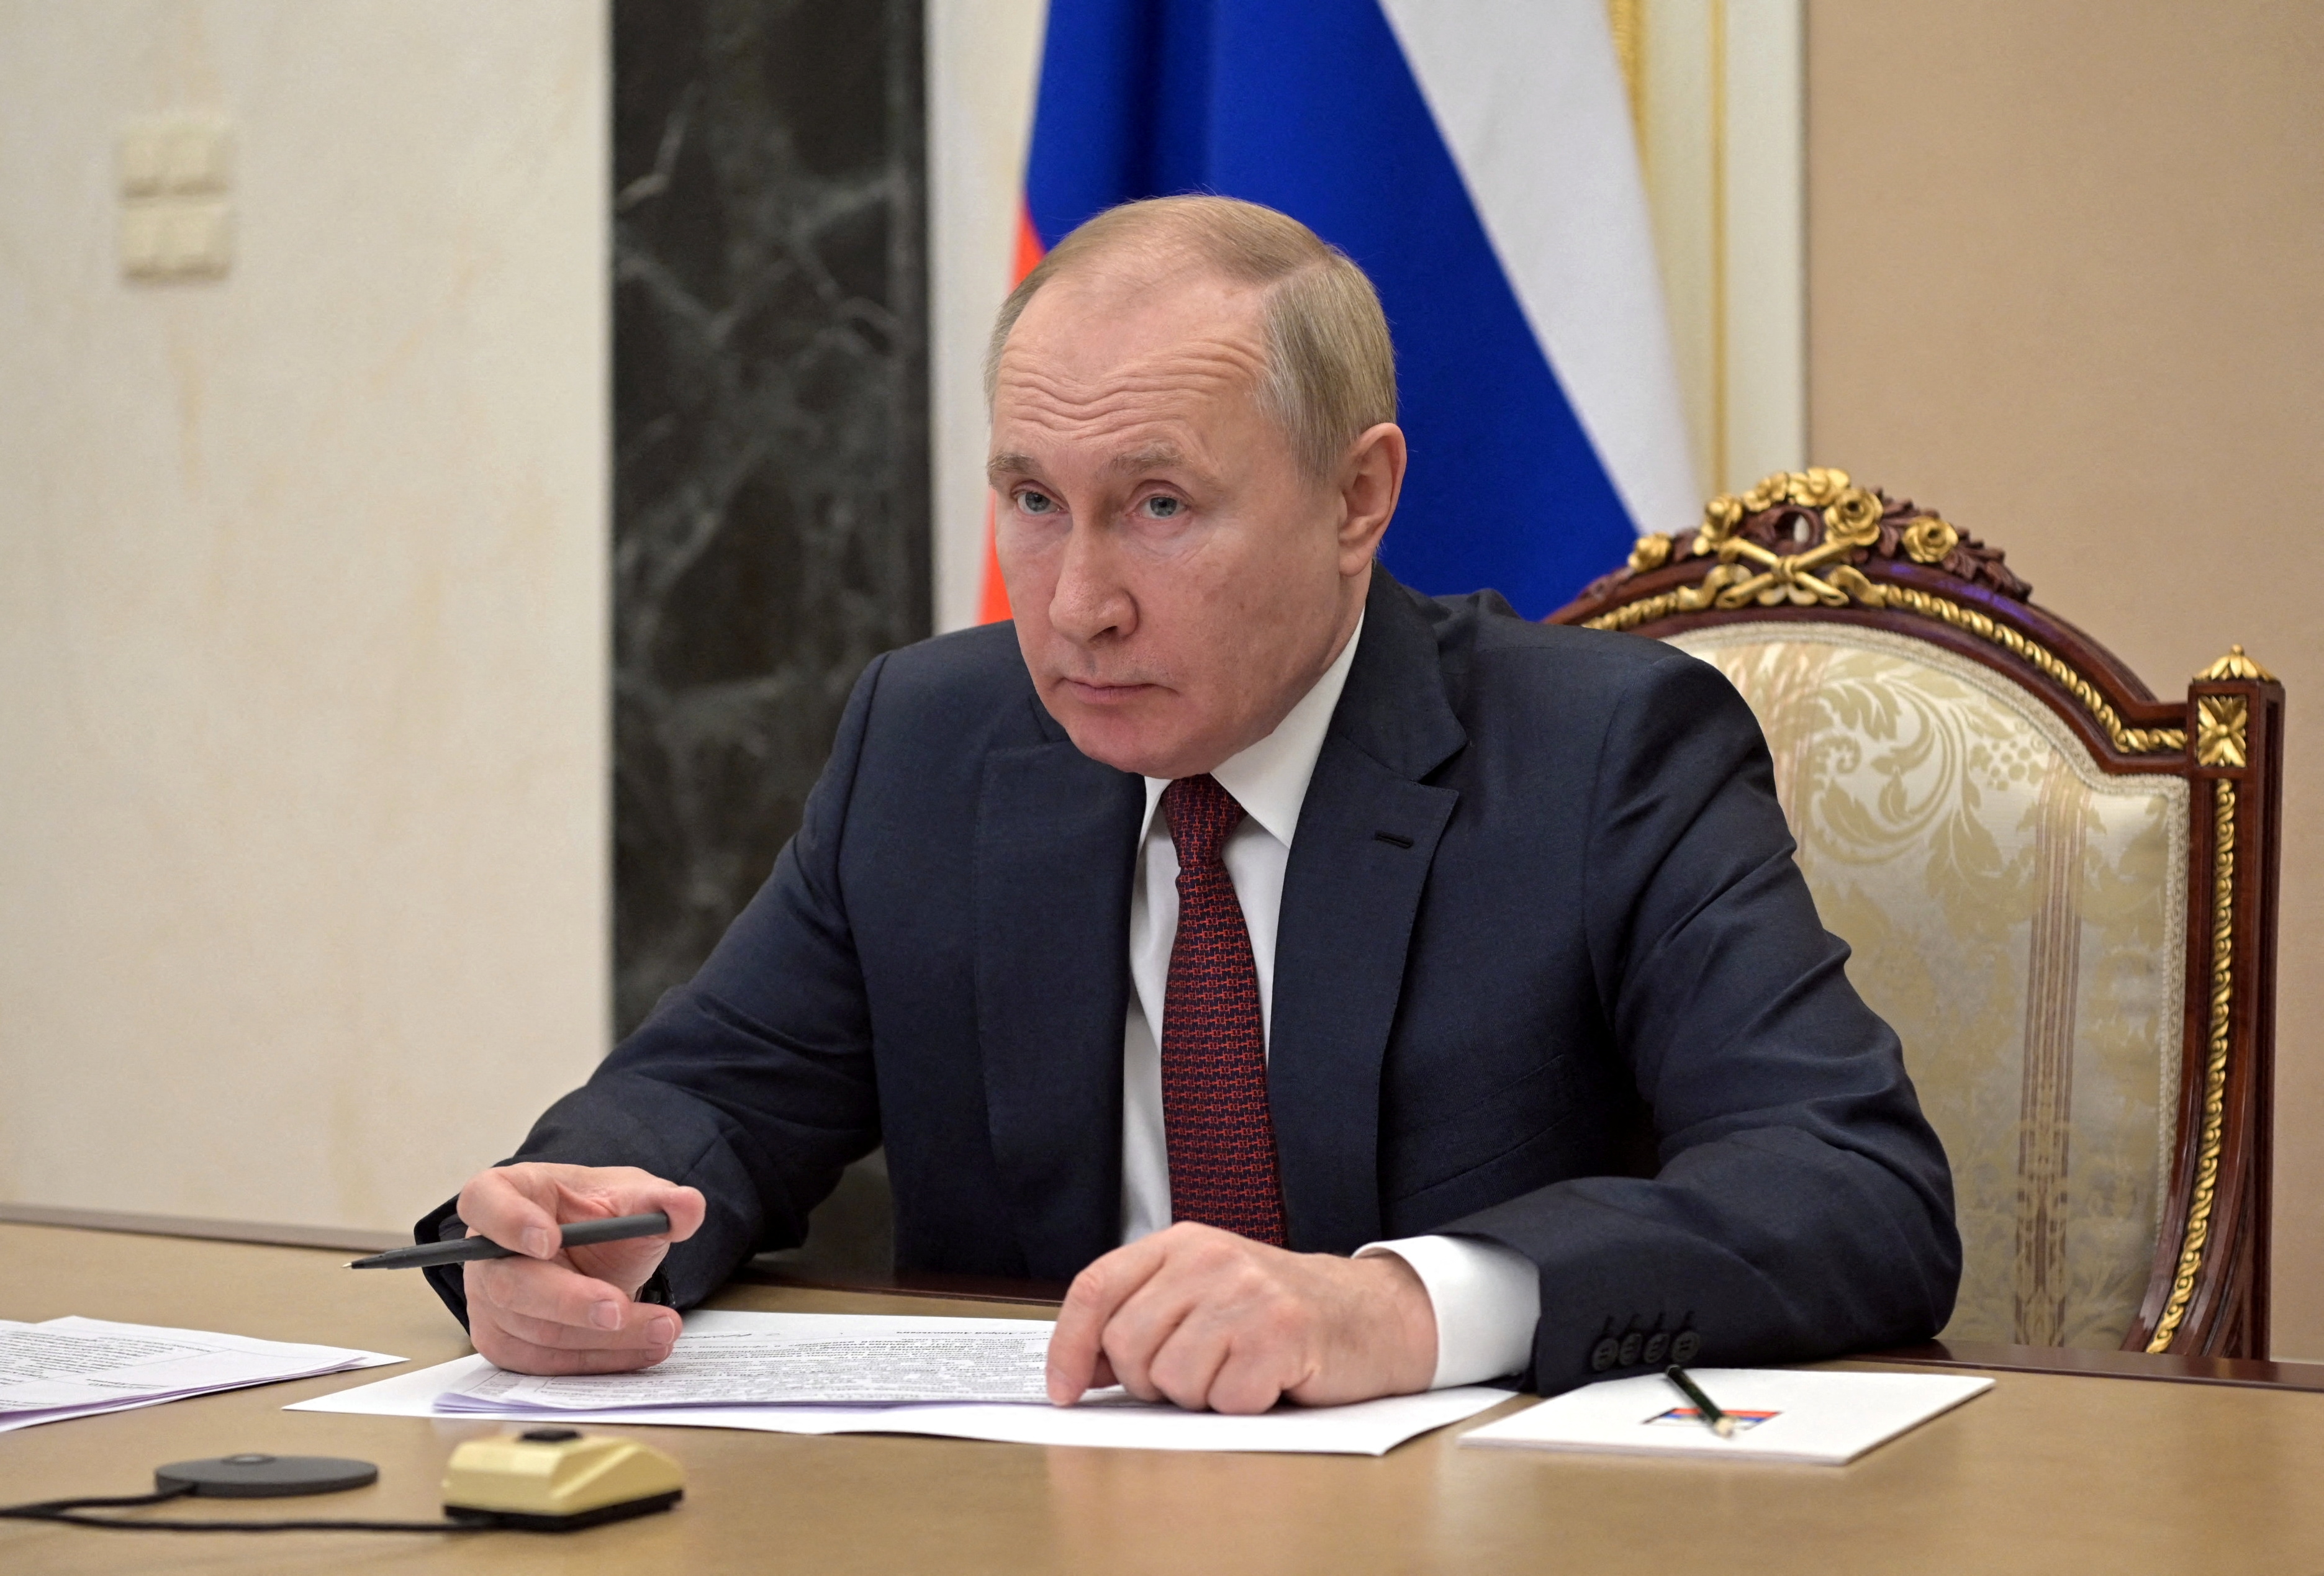 Venäjän presidentti Vladimir Putin osallistuu kokoukseen hallituksen jäsenten kanssa videolinkin kautta Moskovassa, Venäjällä 12. Sputnik/Aleksei Nikolski/Kremlin REUTERSin kautta